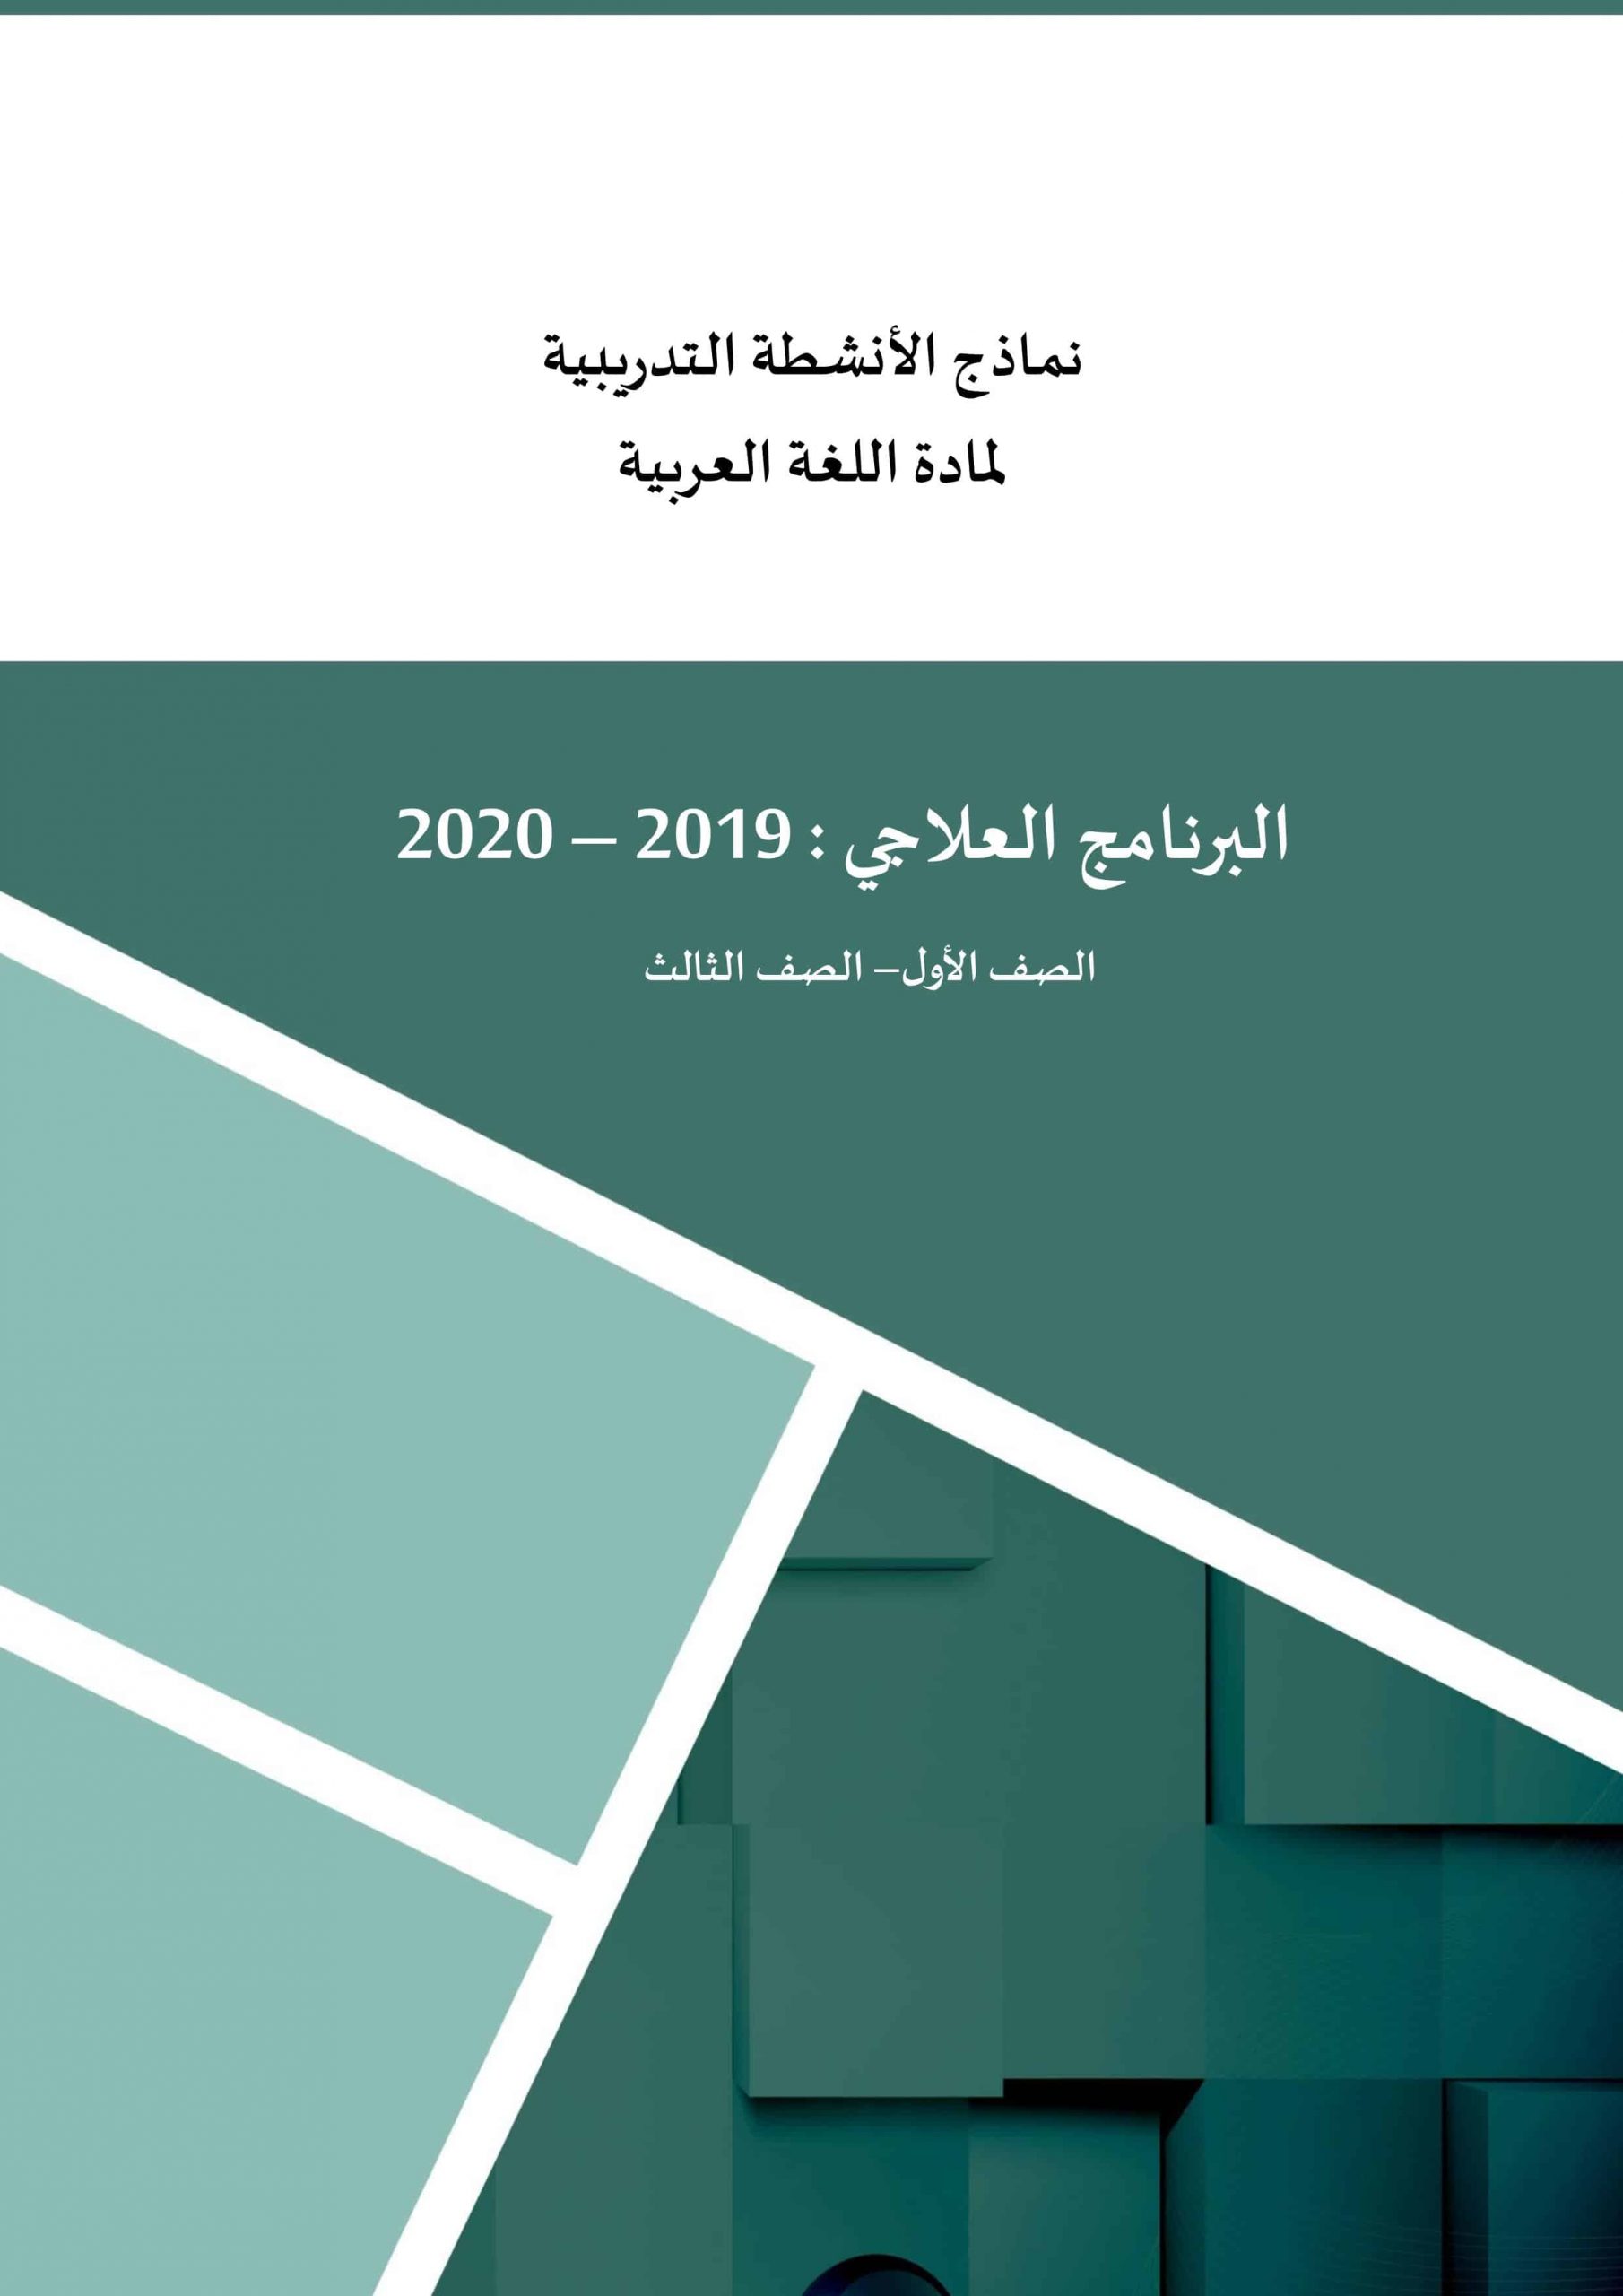 أوراق عمل نماذج الأنشطة التدريبية برنامج العلاجي الصف الأول إلى الثالث مادة اللغة العربية 